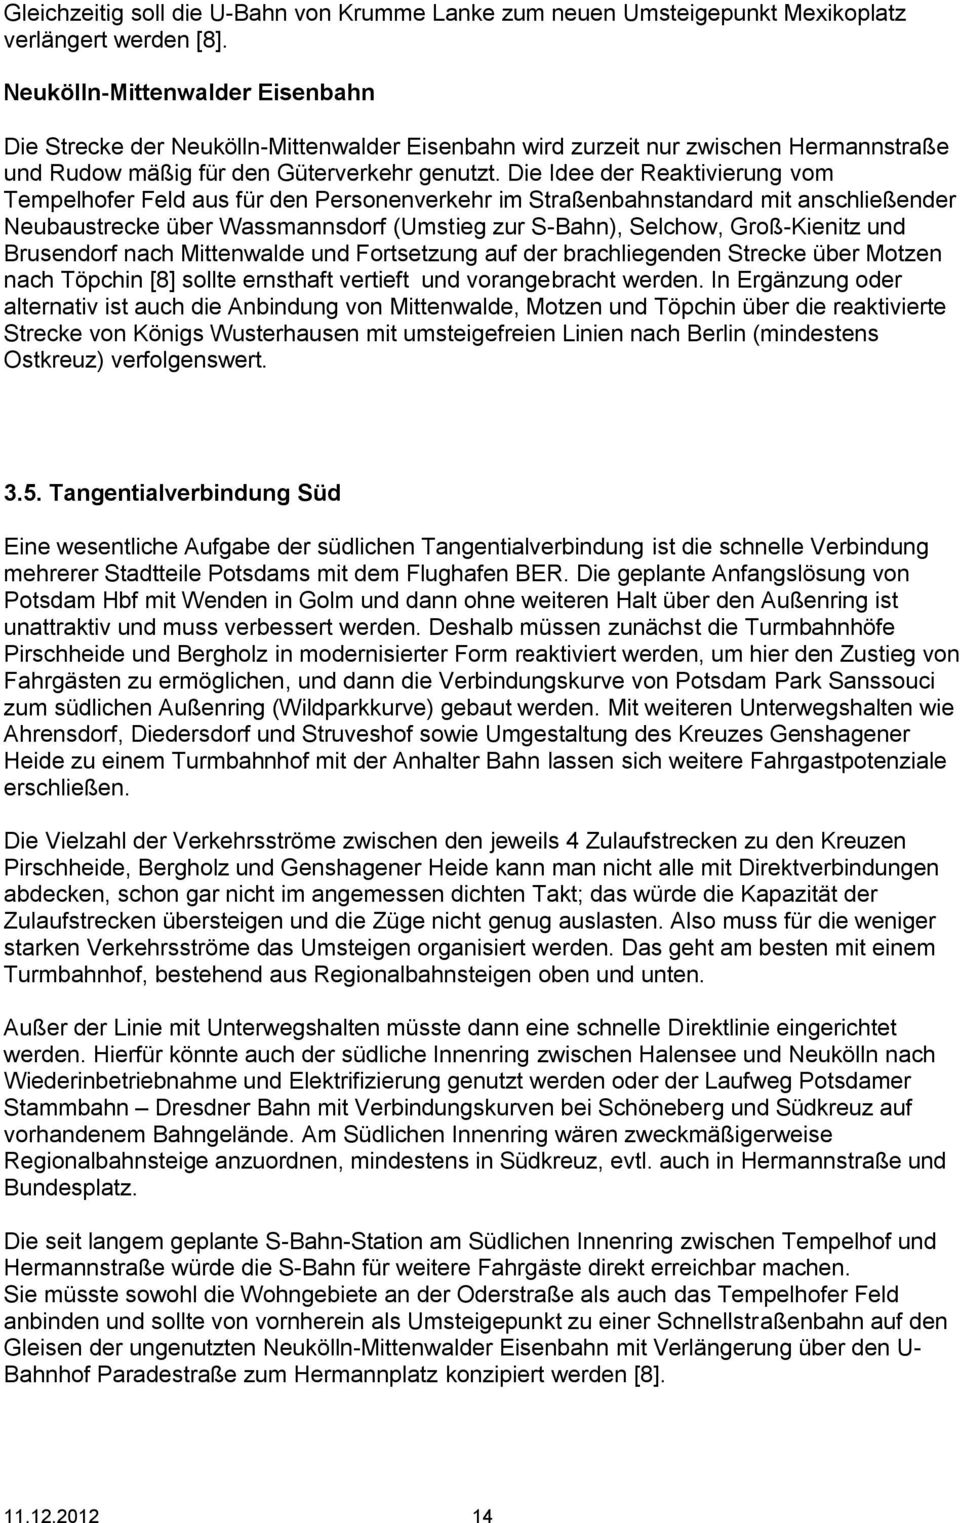 Die Idee der Reaktivierung vom Tempelhofer Feld aus für den Personenverkehr im Straßenbahnstandard mit anschließender Neubaustrecke über Wassmannsdorf (Umstieg zur S-Bahn), Selchow, Groß-Kienitz und